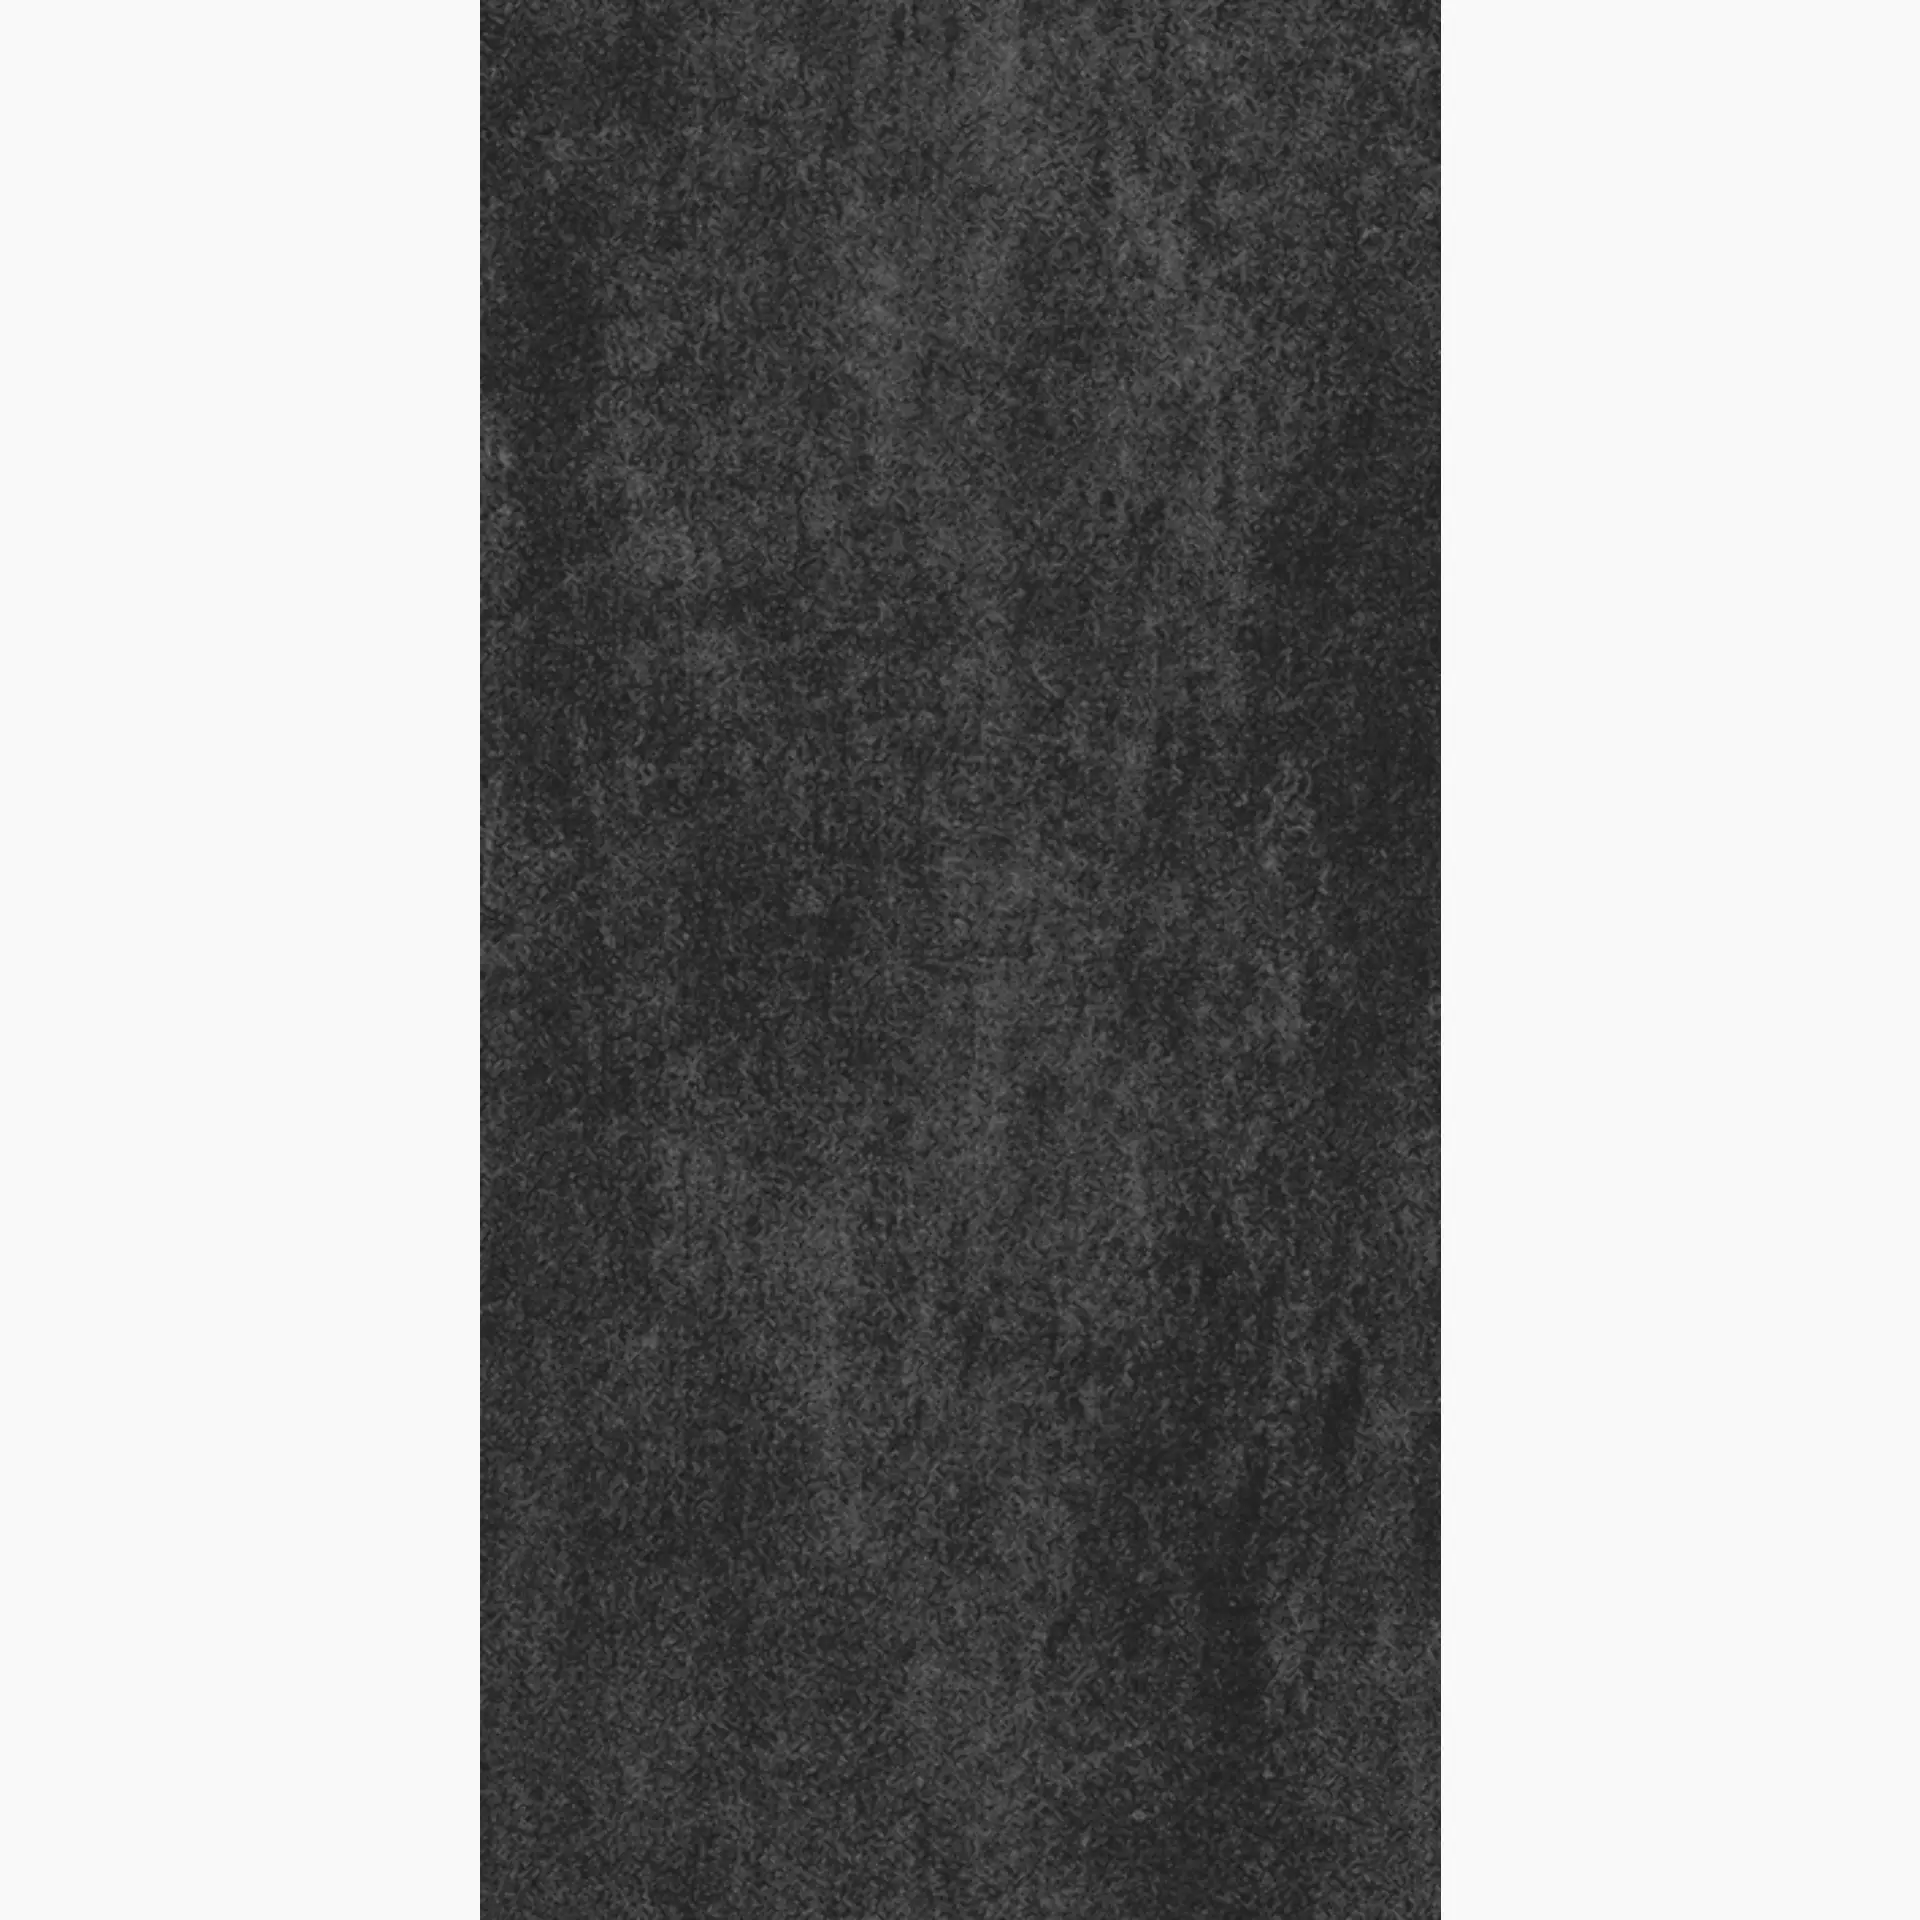 Wandfliese,Bodenfliese Villeroy & Boch Daytona Dark Grey Matt Dark Grey 2341-BP90 matt 30x60cm 9mm